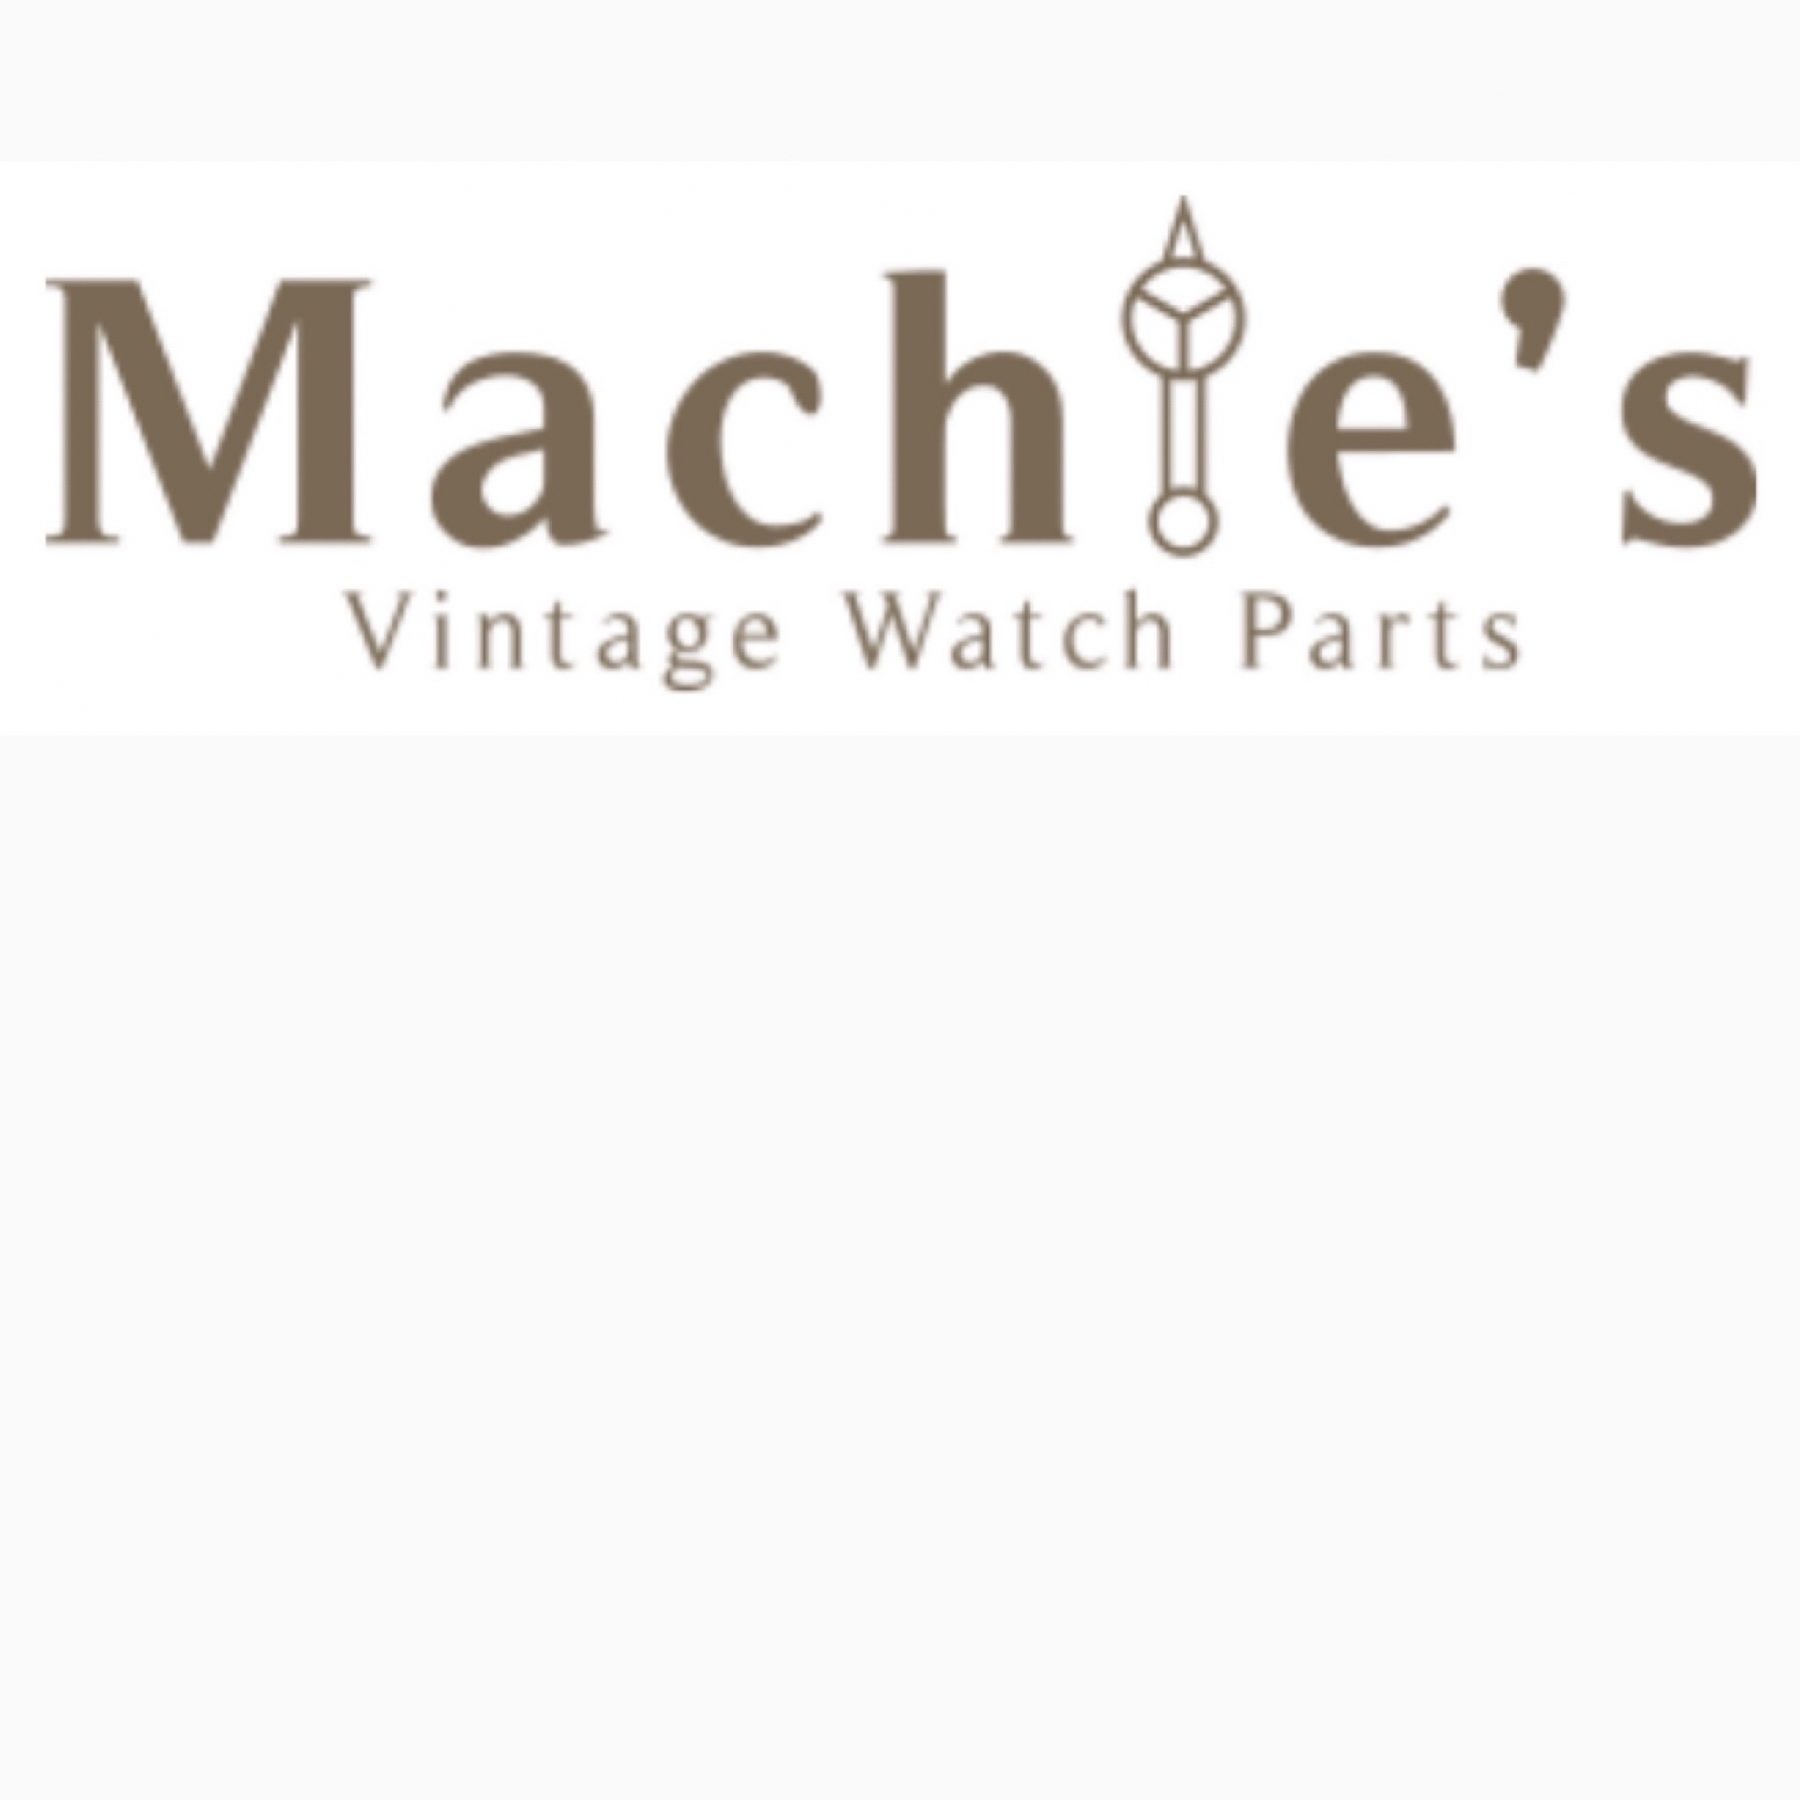 ヴィンテージウォッチパーツ販売サイト「Machie's」